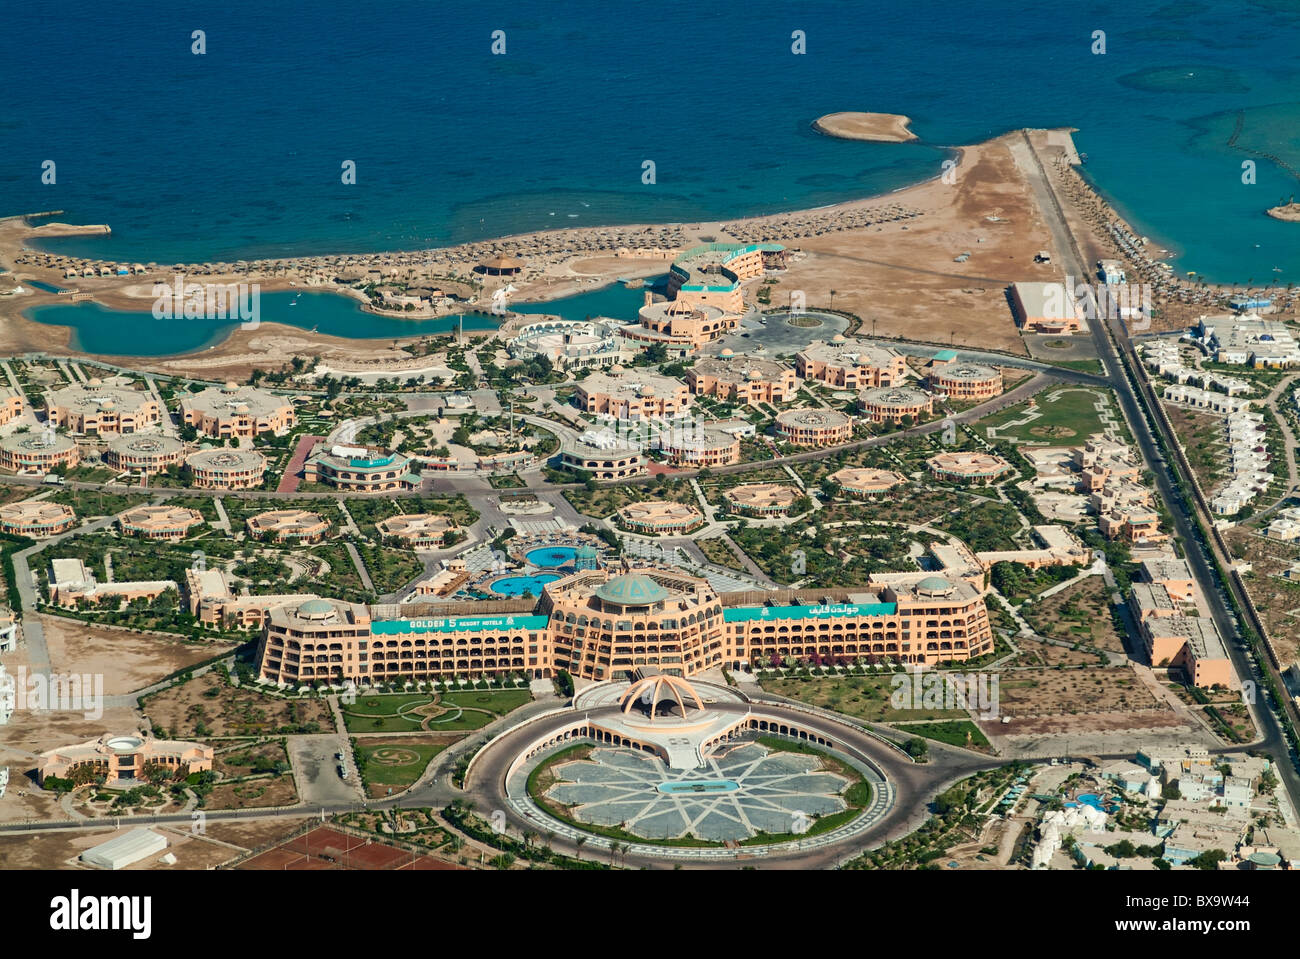 Vista de lujosos hoteles resorts costeros en Hurghada, Mar Rojo, Egipto - vista aérea del Club Golden hotel de 5 estrellas Foto de stock